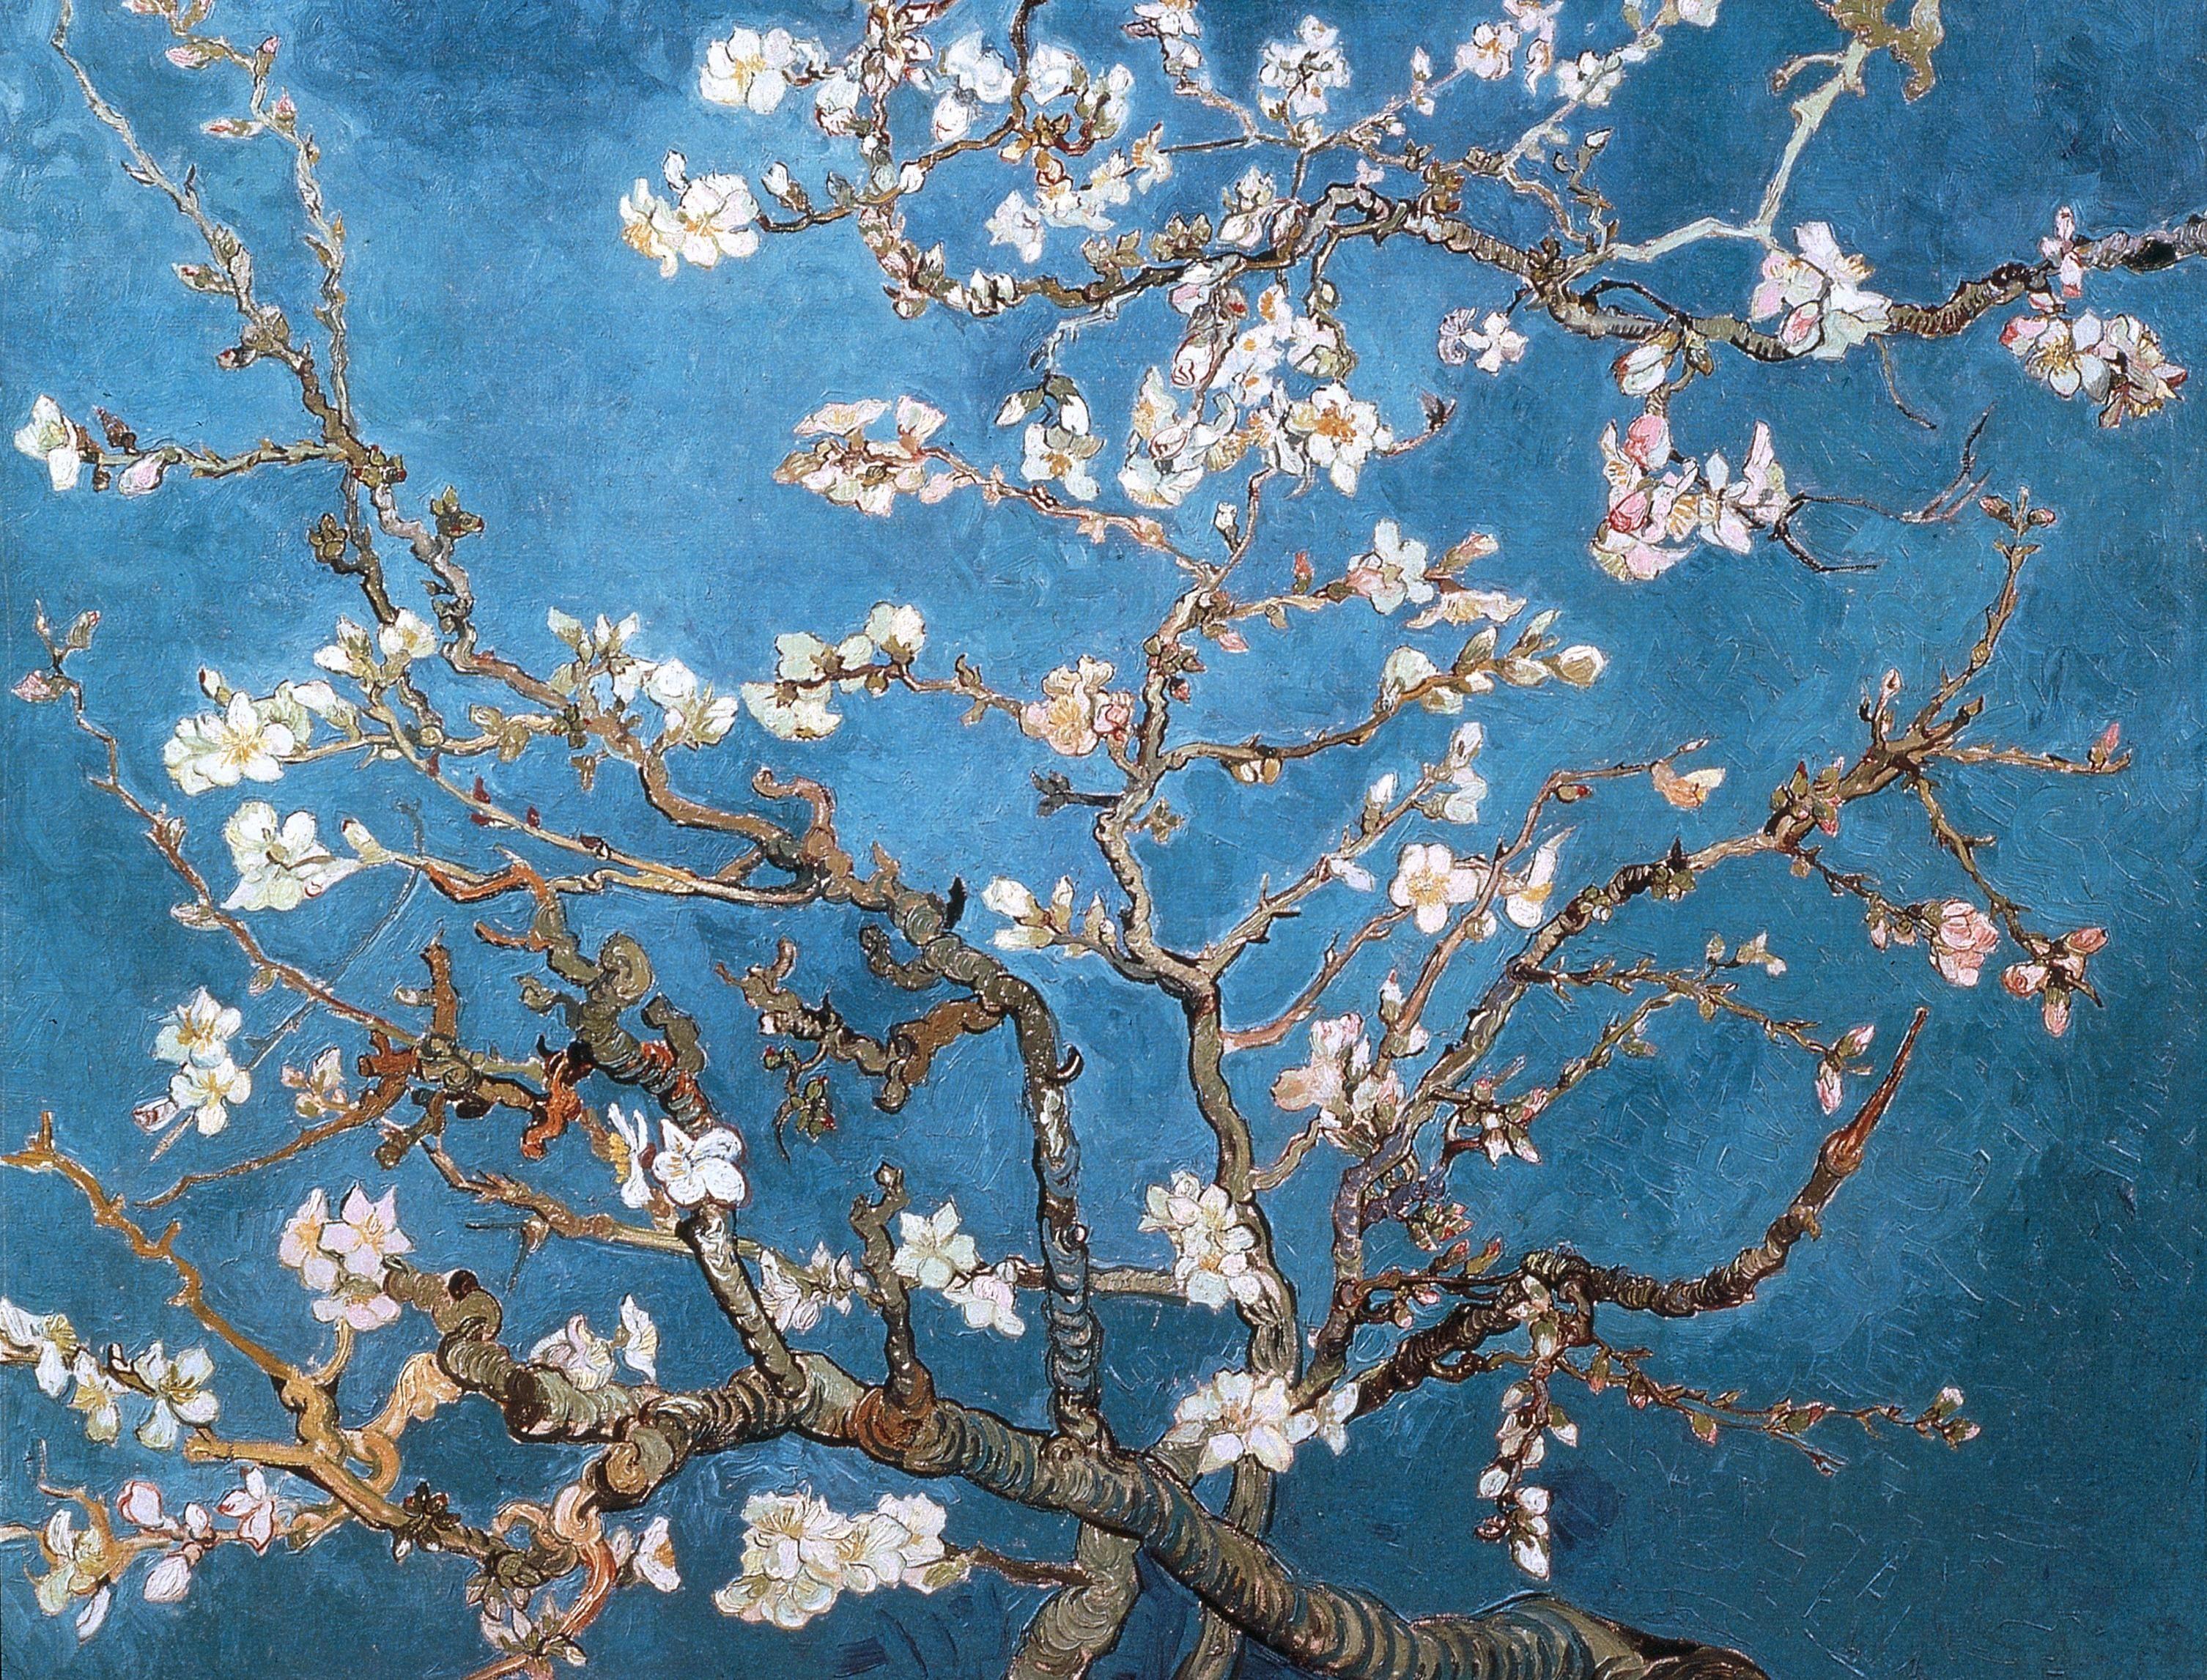 نقاشی زیبا و دیدنی شکوفه های بادام اثر نقاش بزرگ و معروف به اسم ونسان ون گوگ